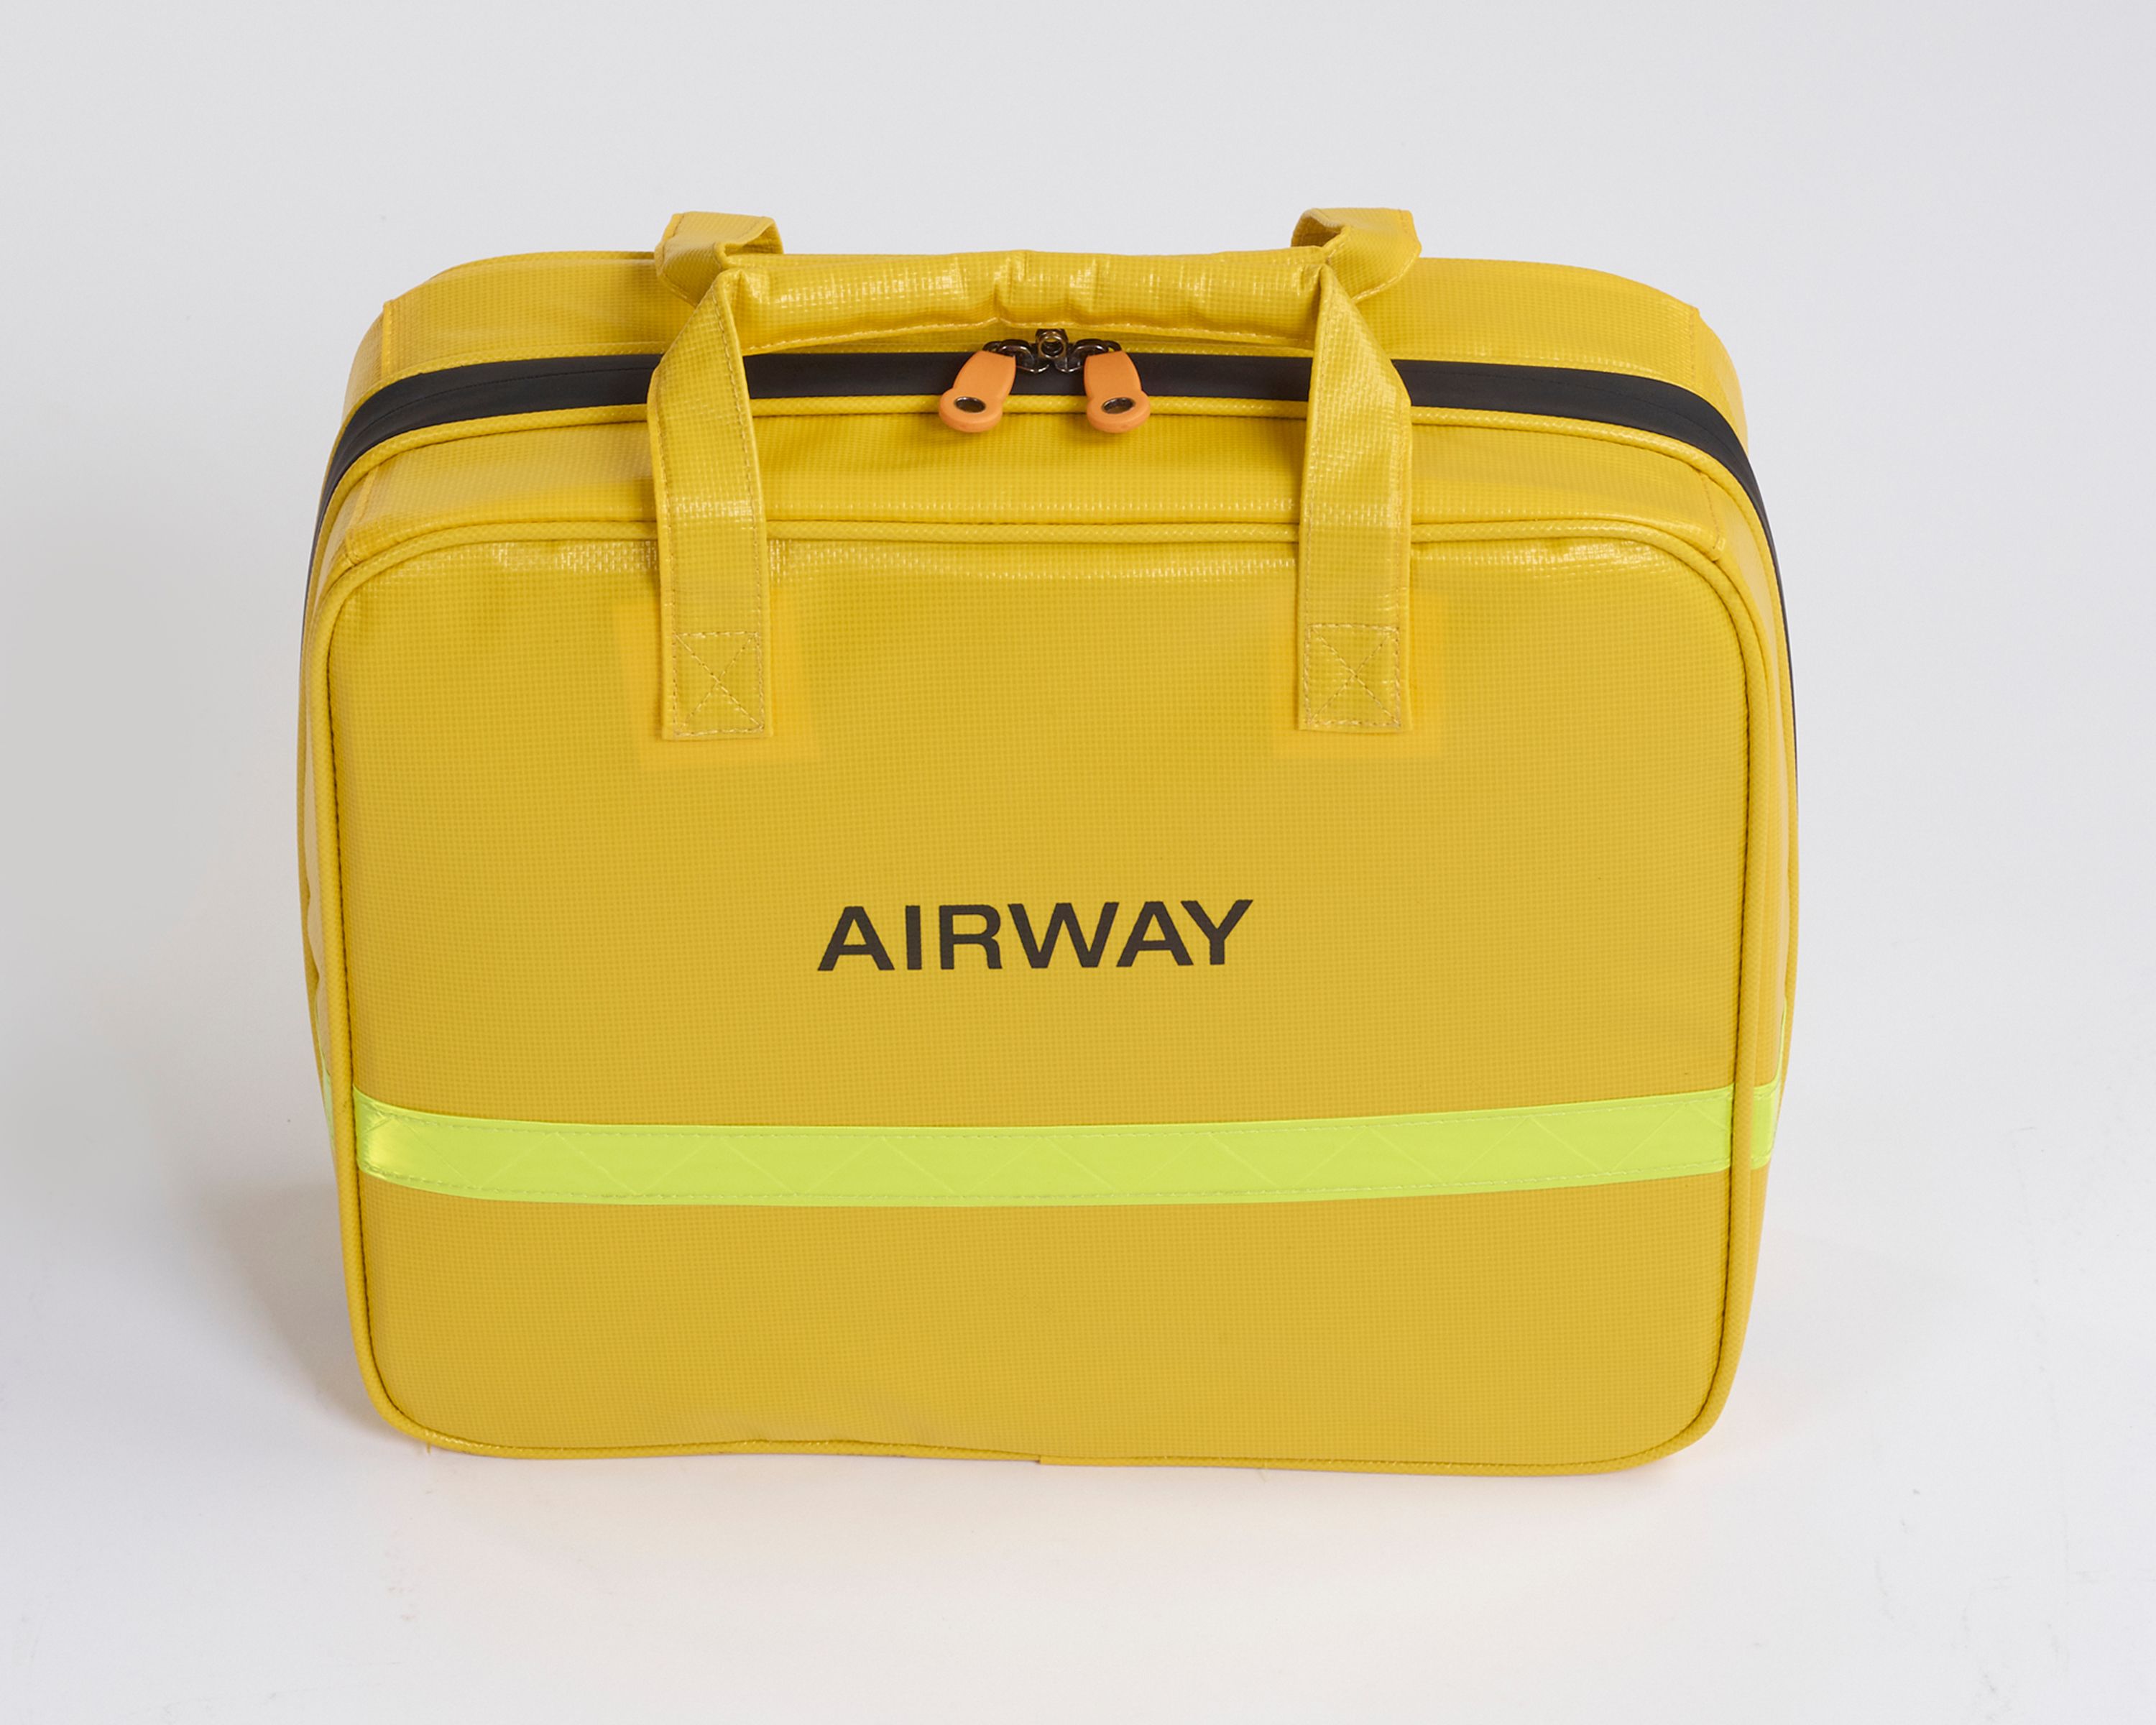 Airways Bag